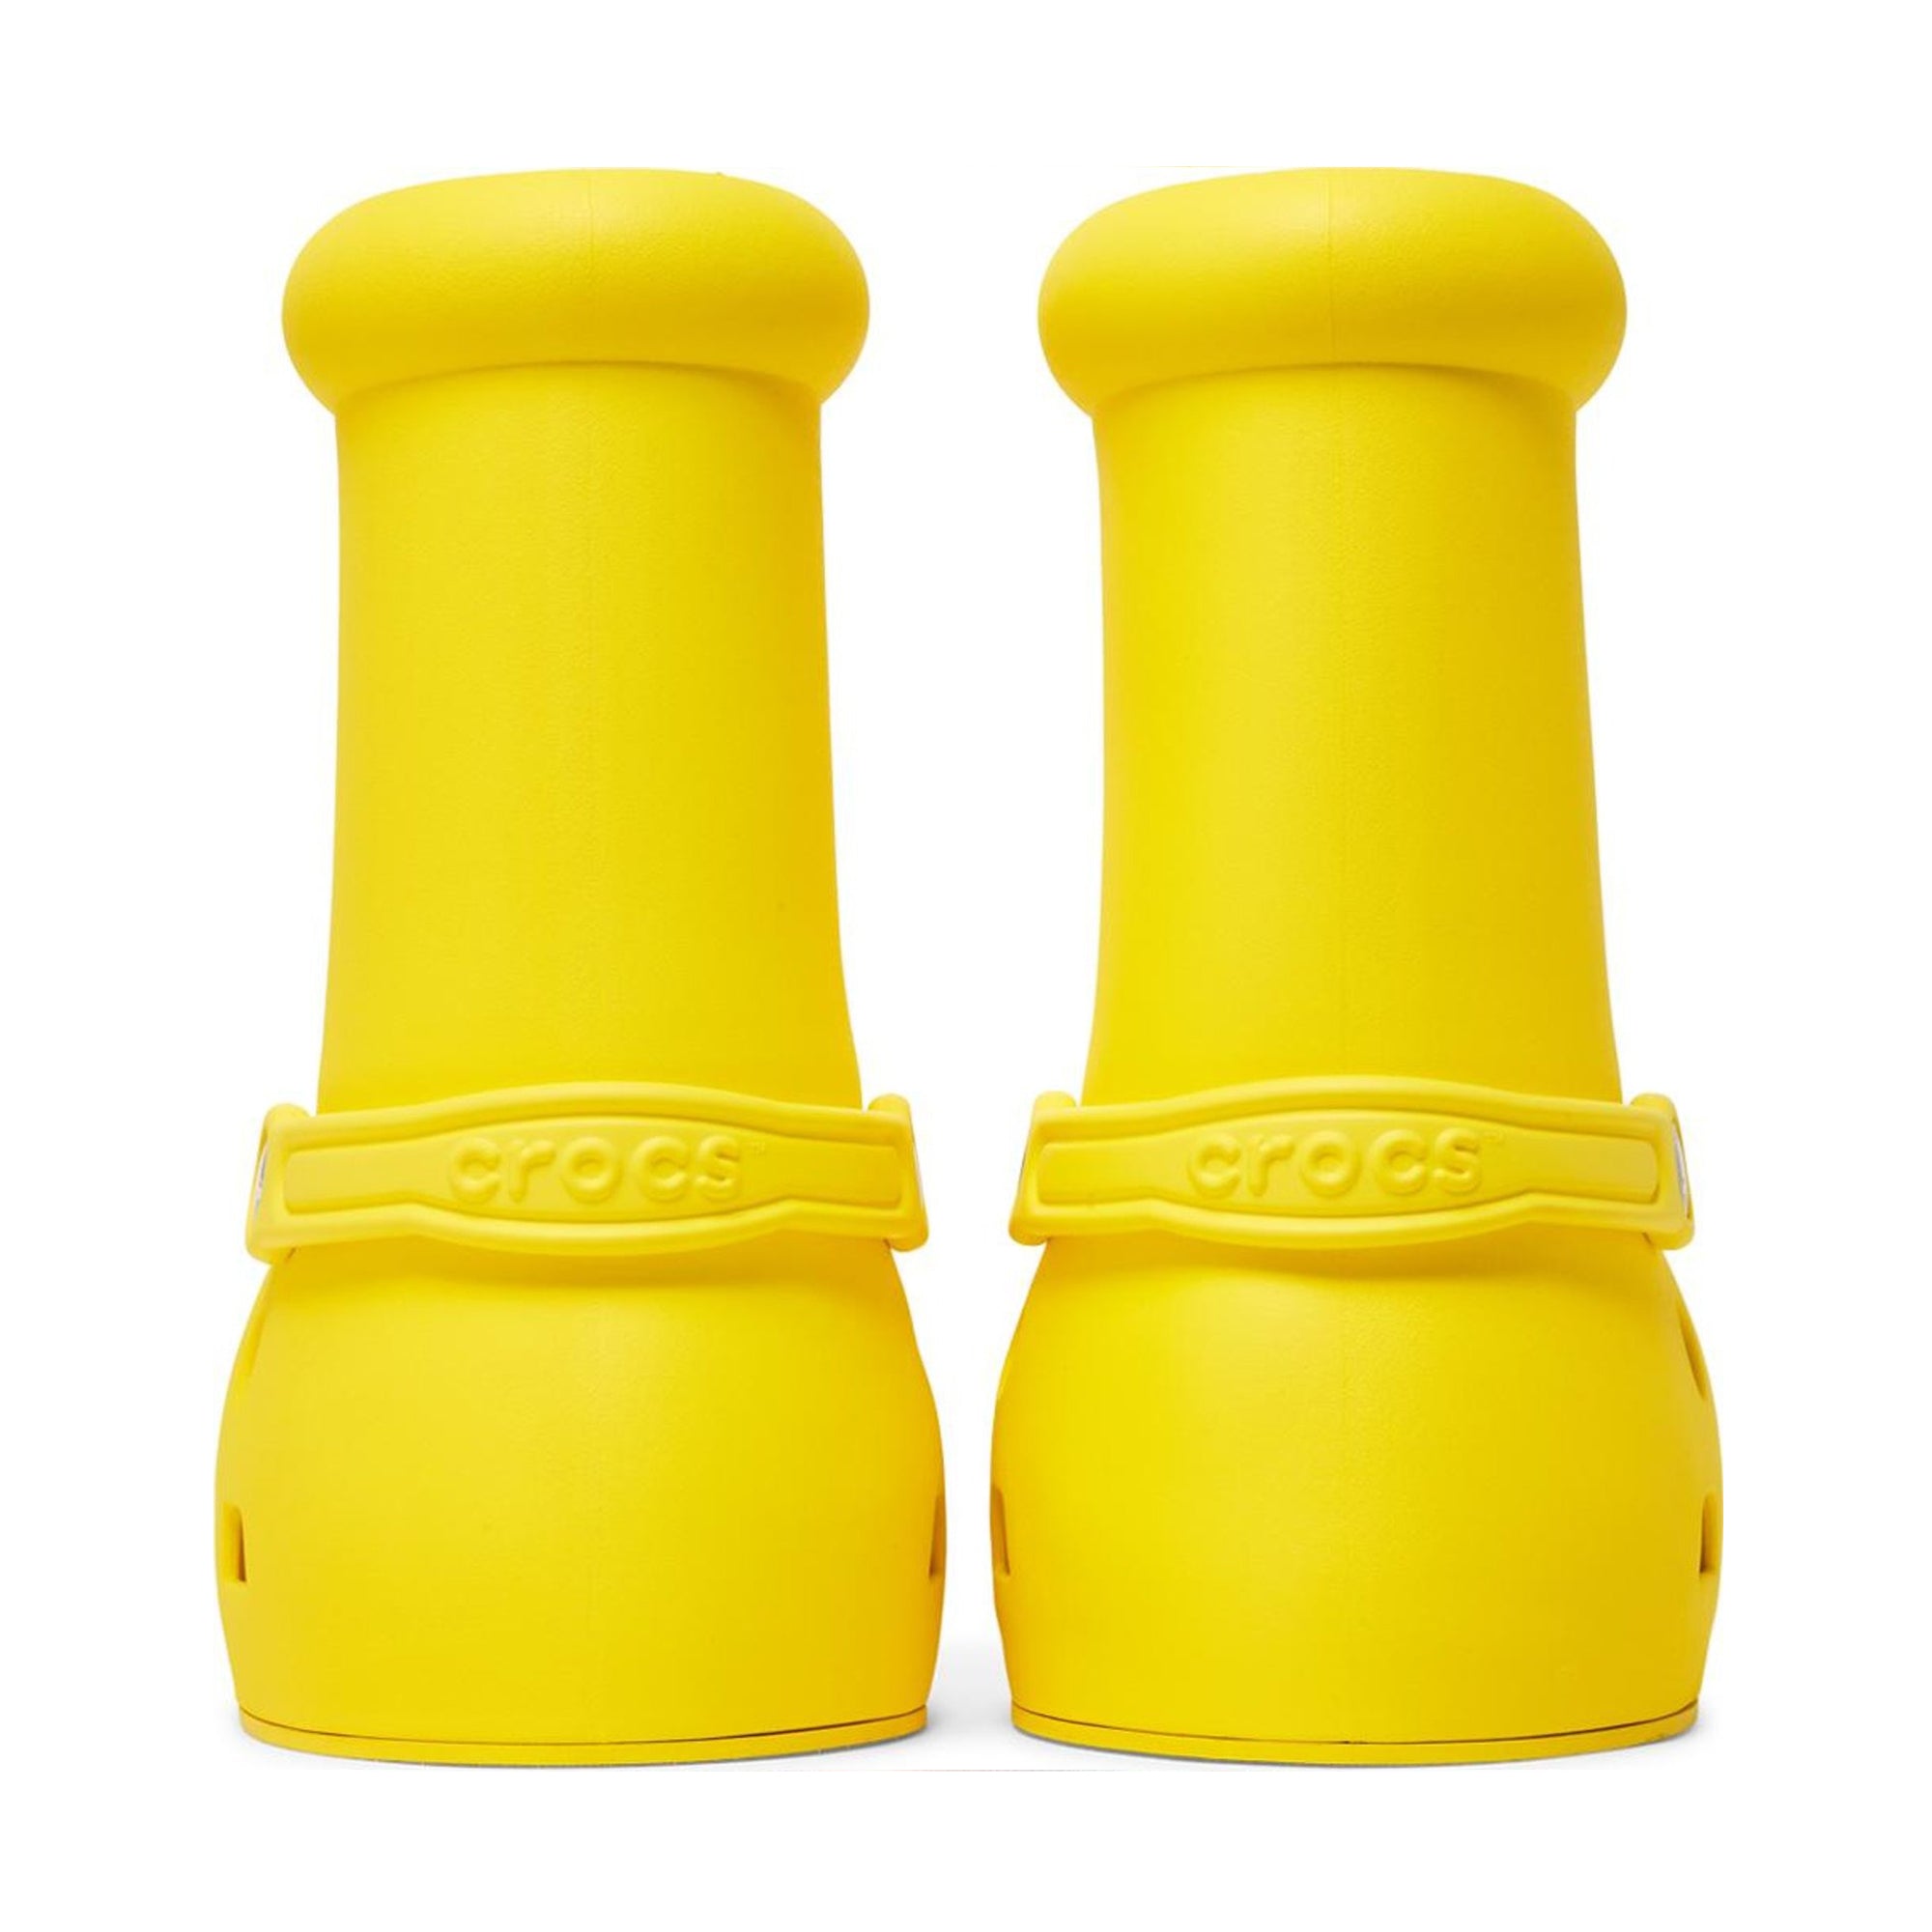 超ポイント祭?期間限定 MSCHF X CROCS BIG Yellow- RED BOOT (YELLOW) Boot Buy 24cm Red 靴